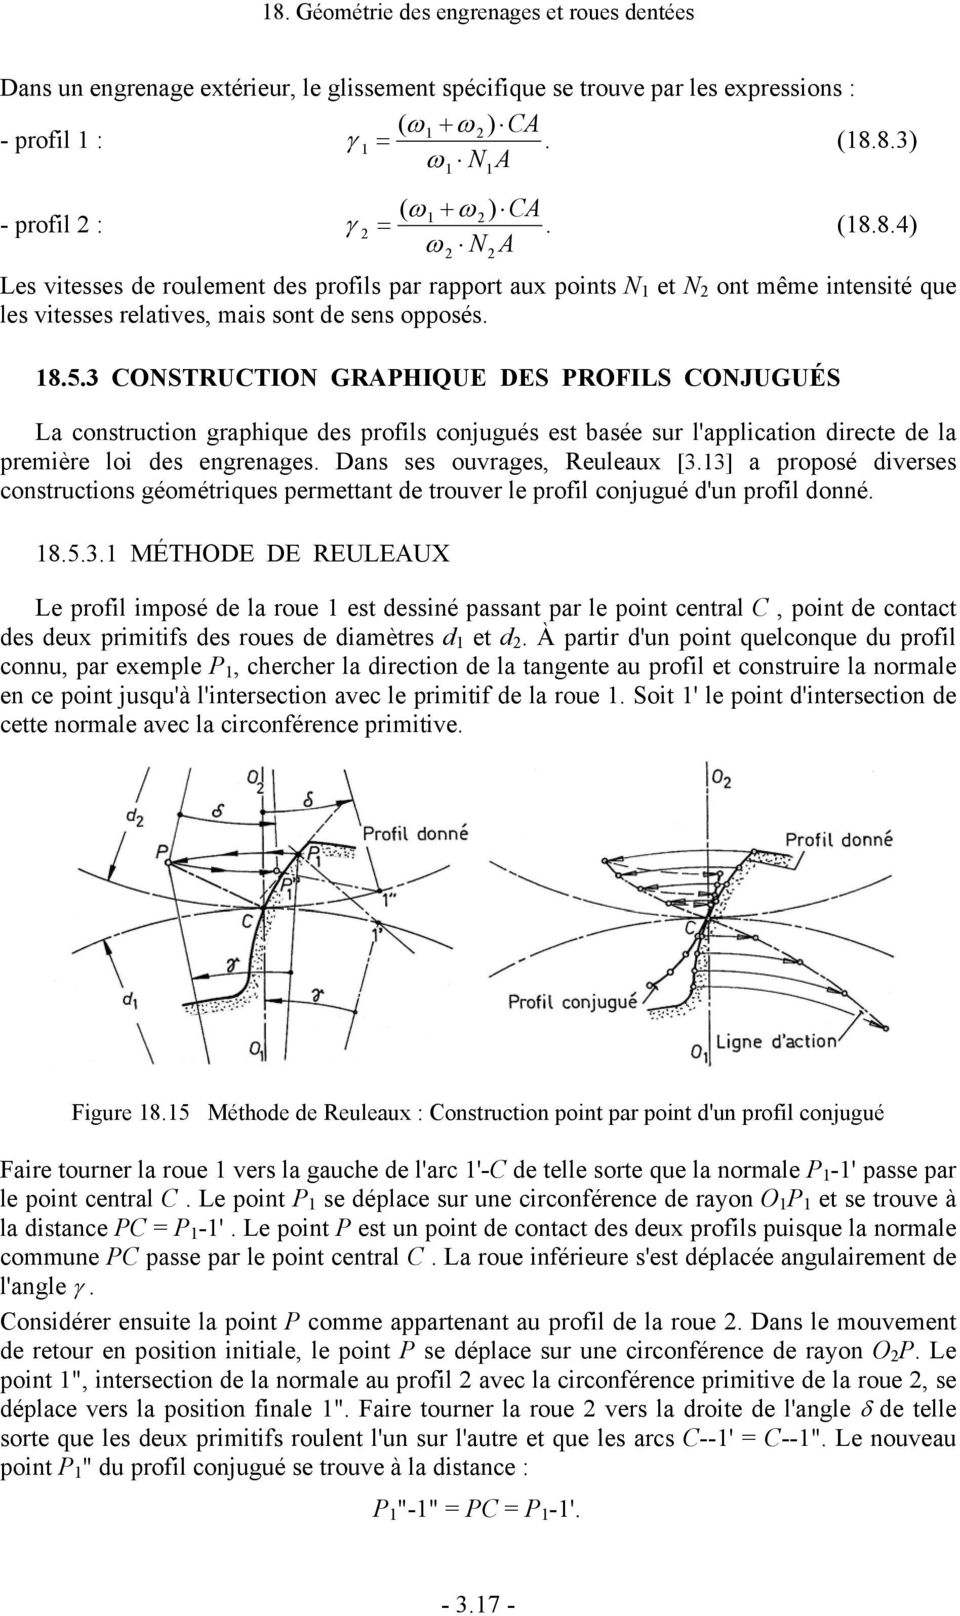 3 CONSTRUCTION GRAPHIQUE DES PROFILS CONJUGUÉS La construction graphique des profils conjugués est basée sur l'application directe de la première loi des engrenages. Dans ses ouvrages, Reuleaux [3.